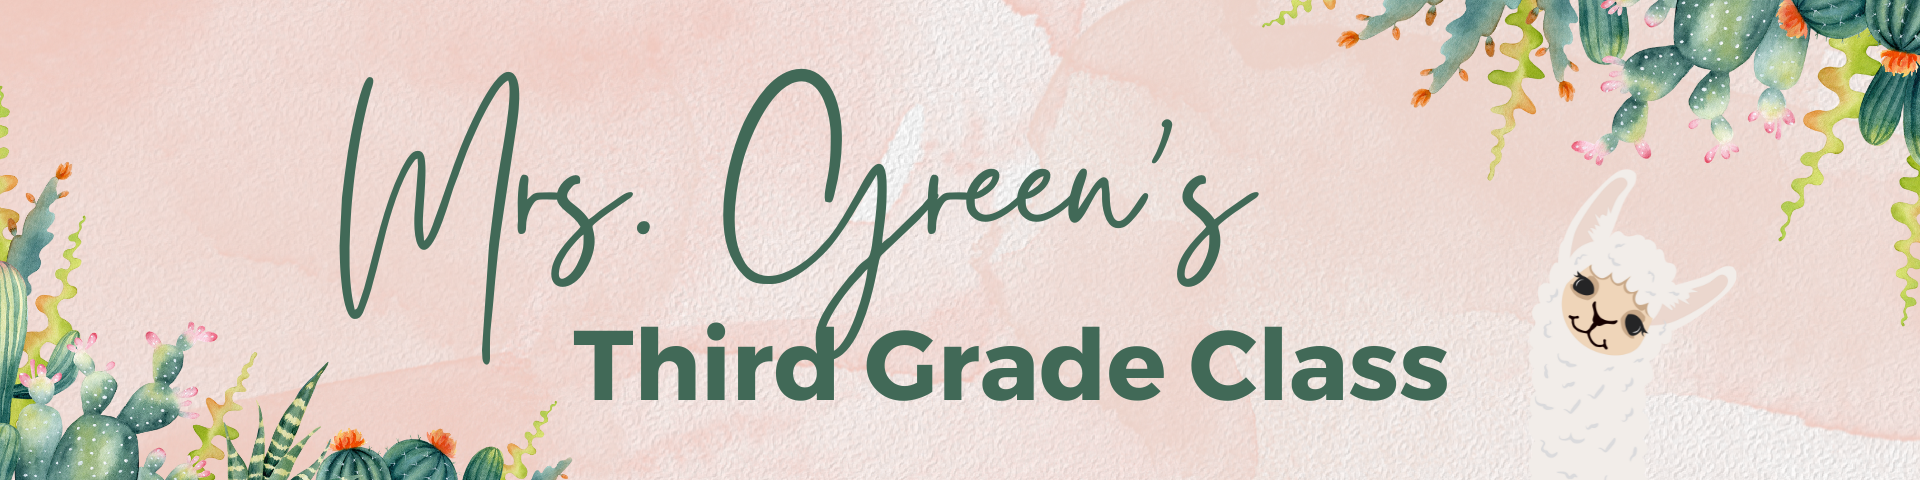 Mrs. Green's Third Grade Classn banner